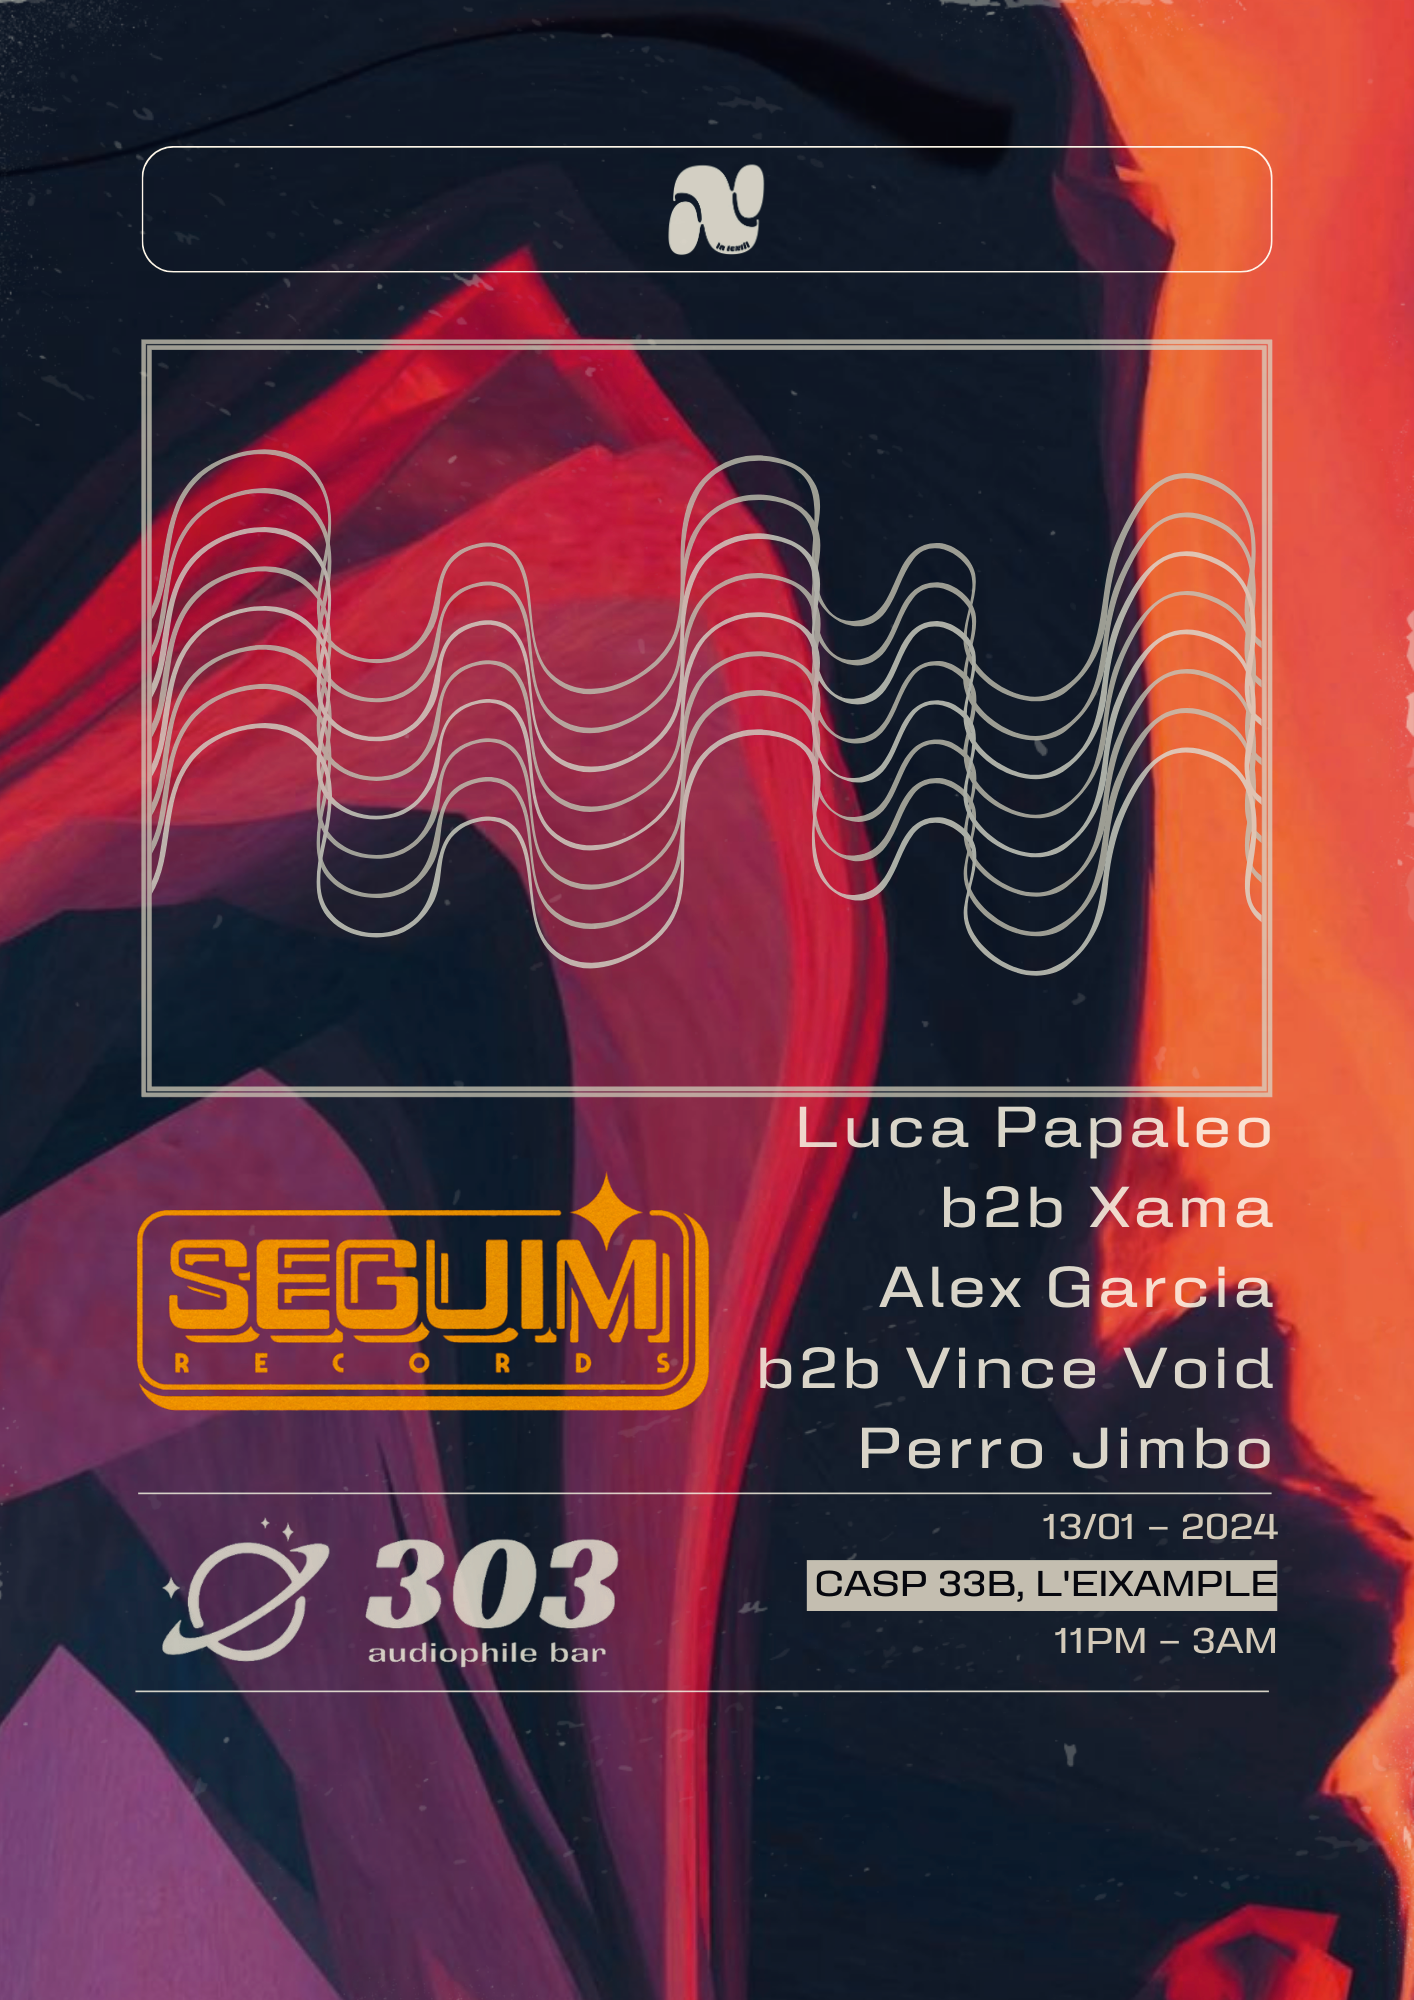 Seguim Records @ 303 / Perro Jimbo  / Vince Void /  Alex García /  Luca Papaleo / Xama - フライヤー表